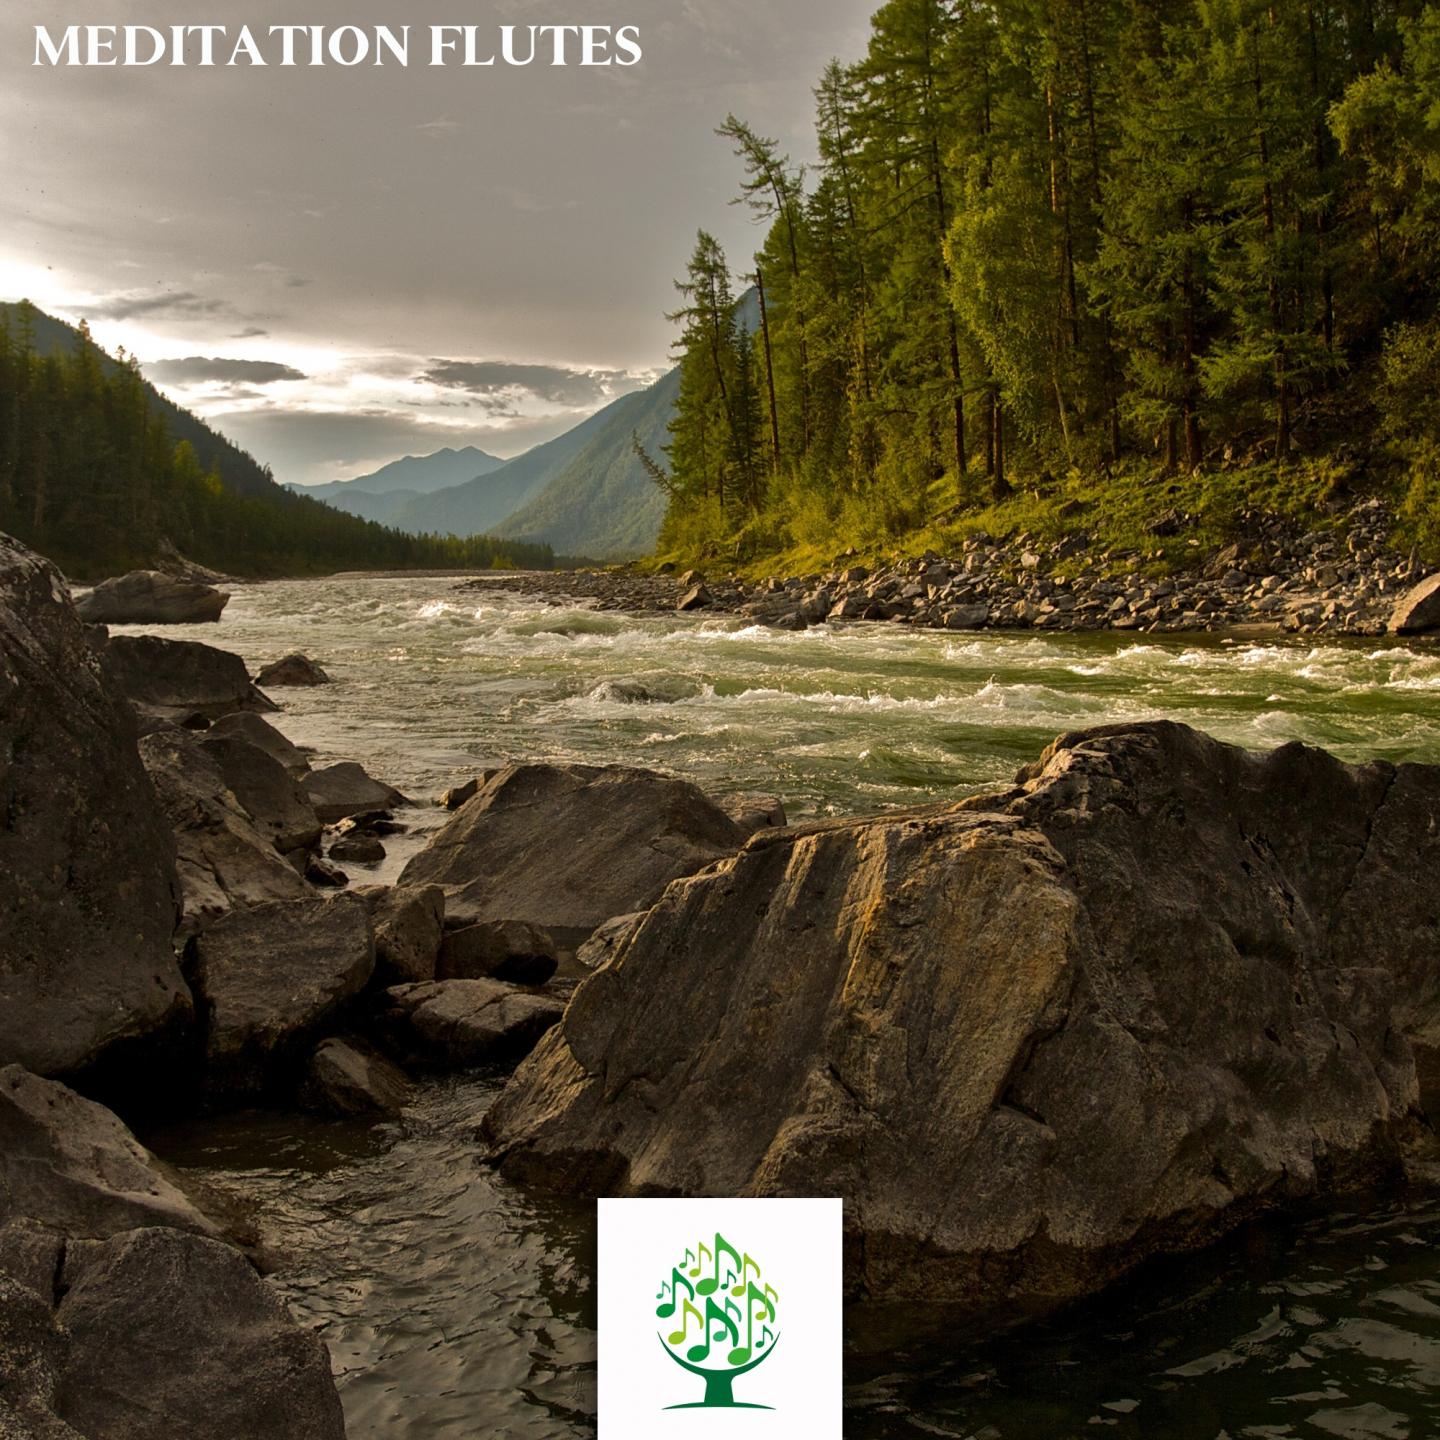 Meditative Flutes Topic